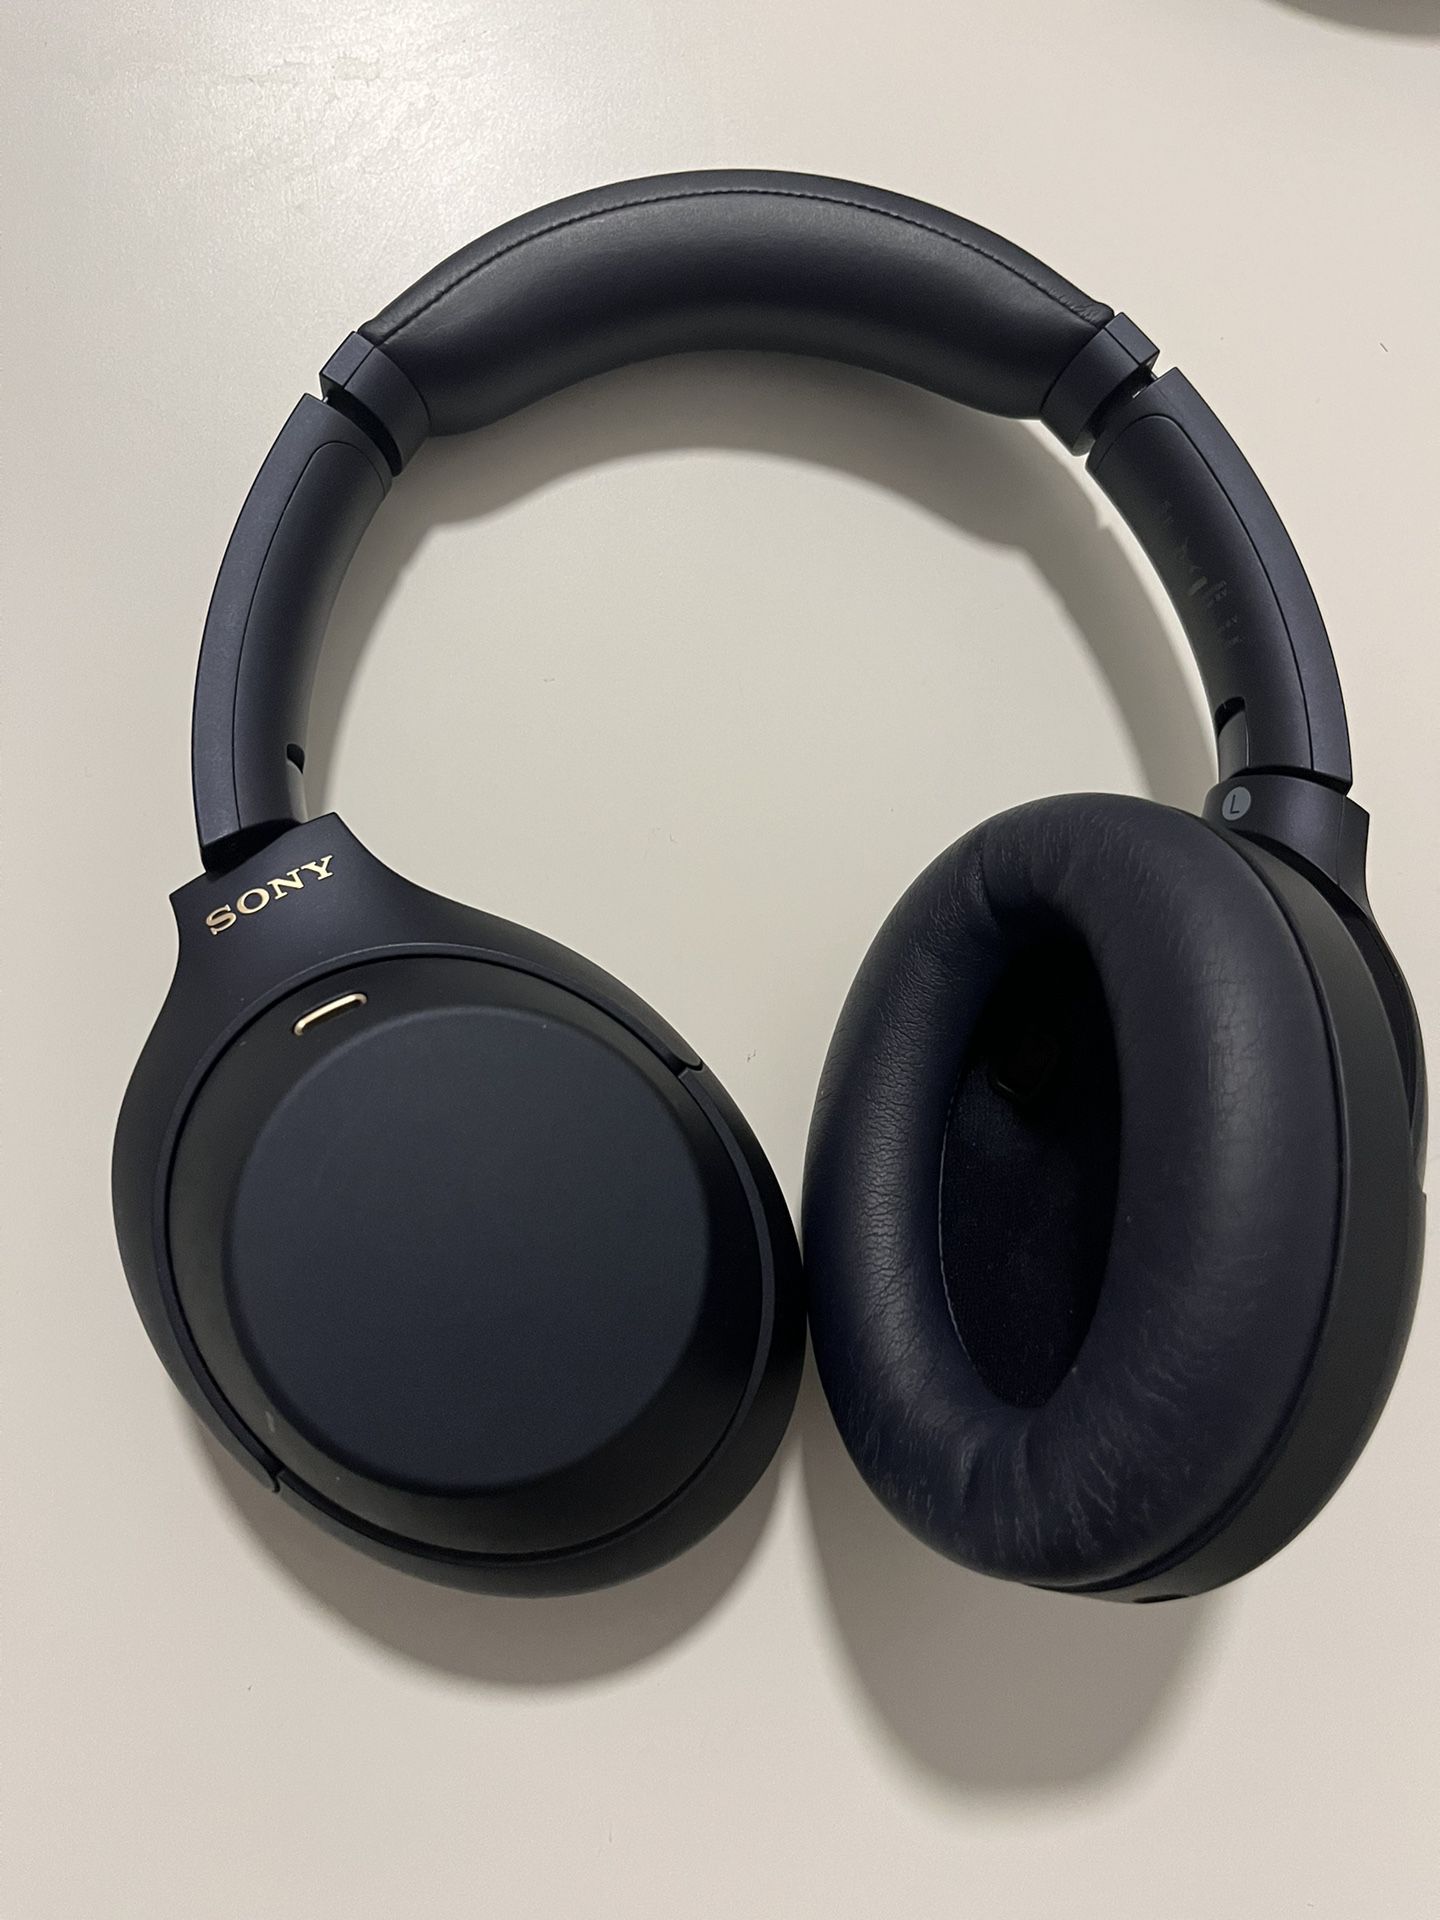 Sony WH-1000xm4 | Wireless Premium Noise-Canceling Headphones